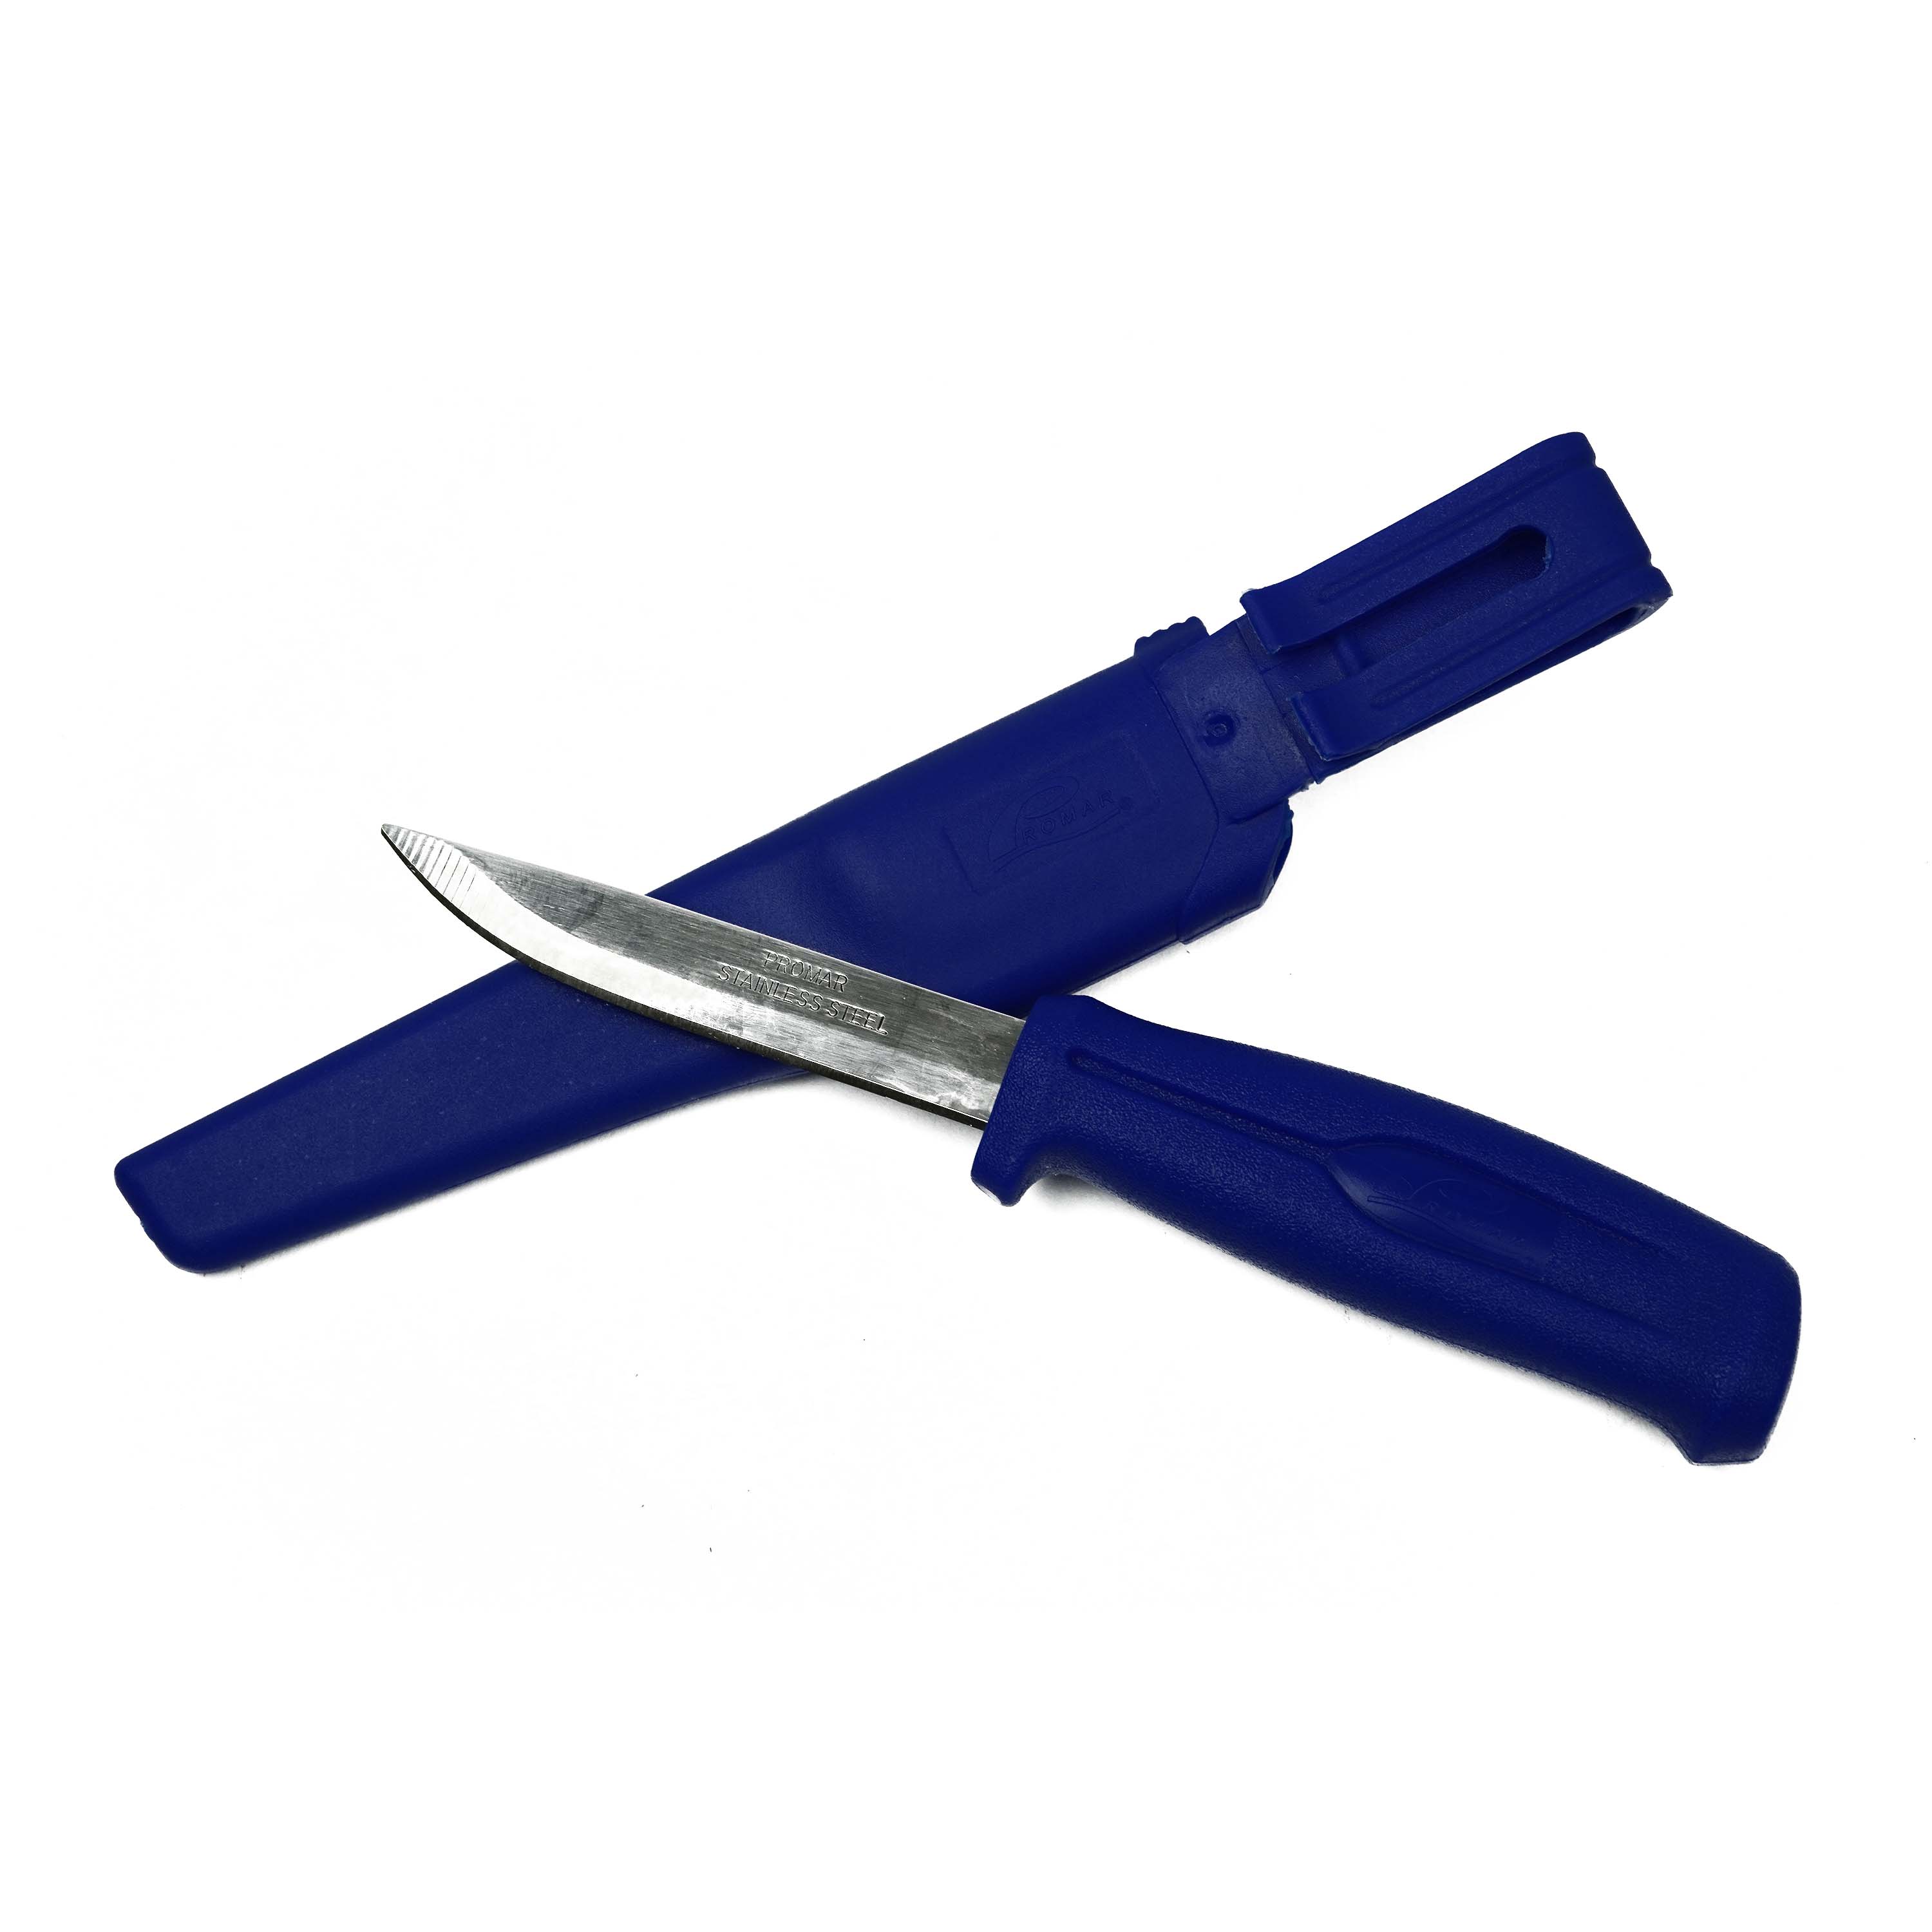 Promar Stainless Steel Knife w/Sheath